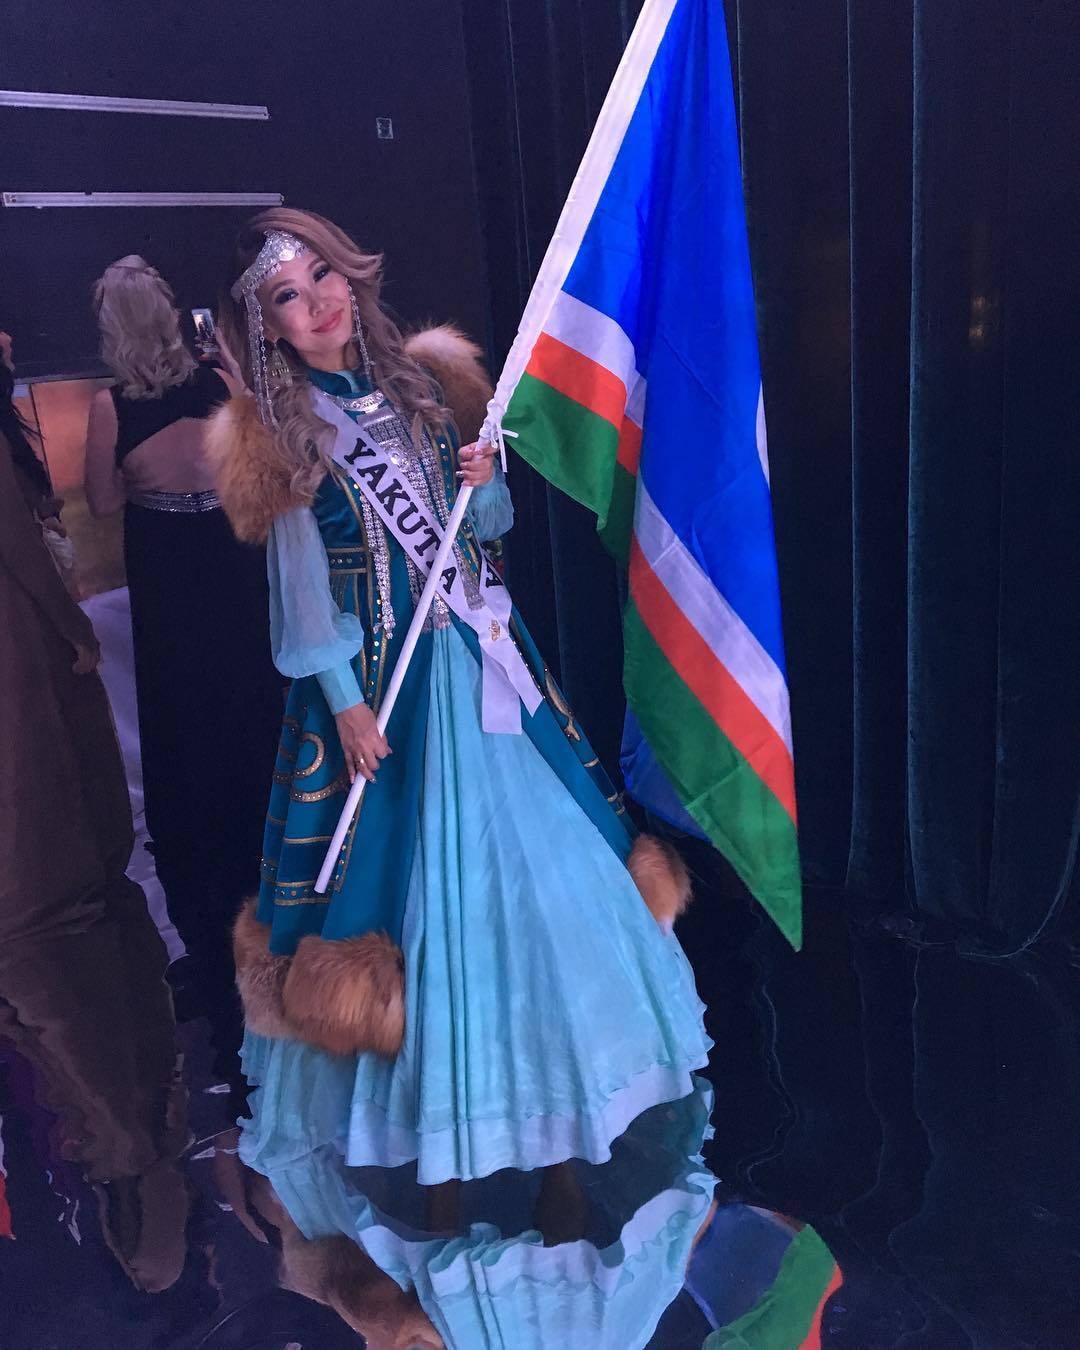 Якутянку Варю Максиму отсеяли на этапе отбора в международном конкурсе красоты "Mrs. Globe" в Китае